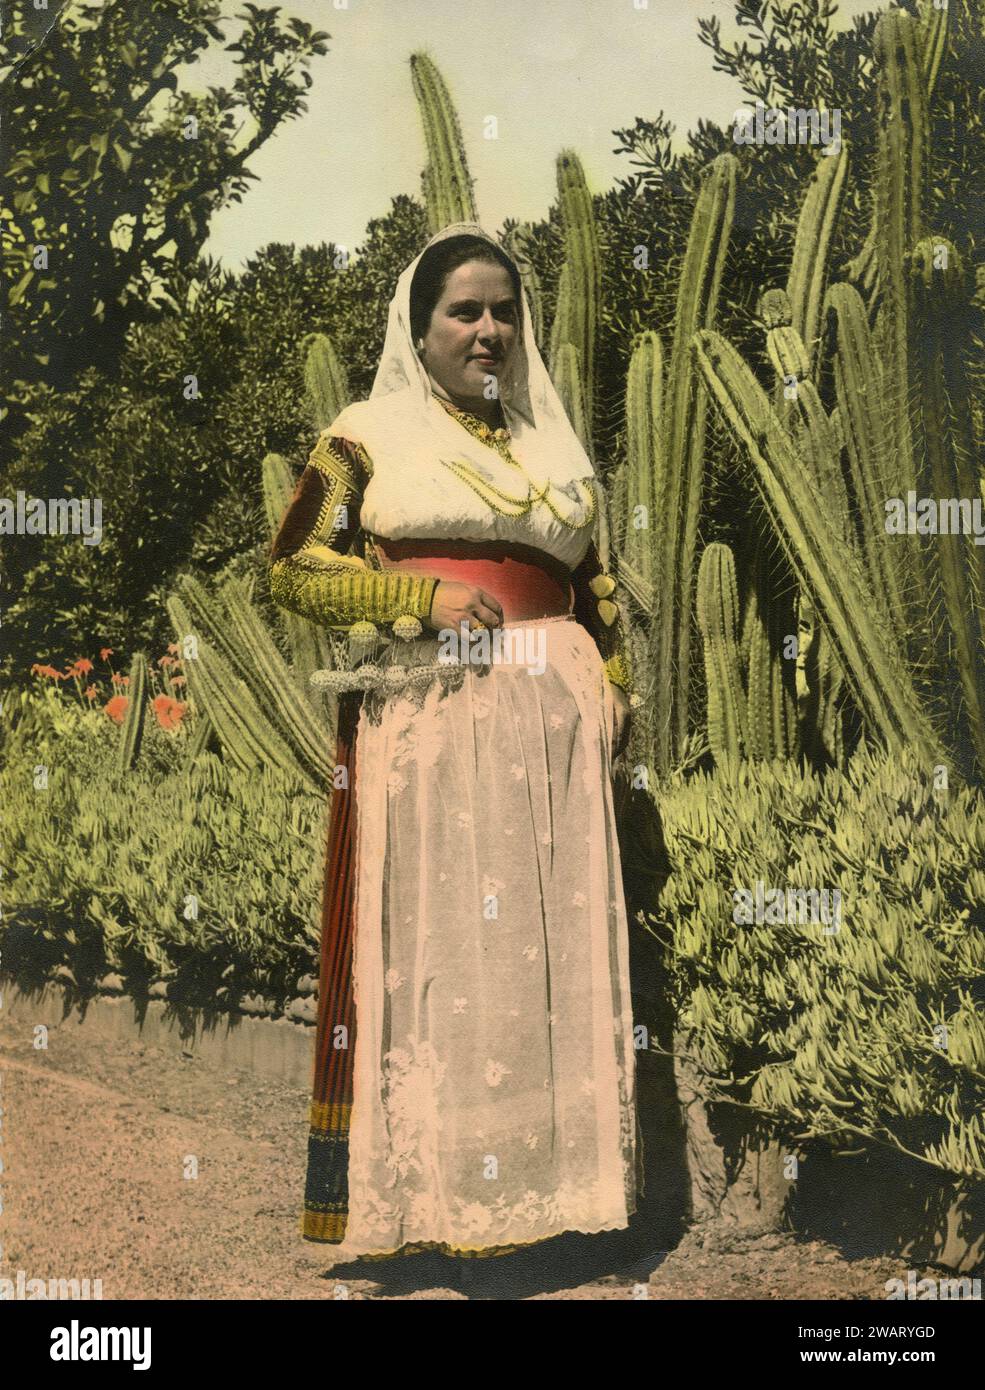 Femme portant le costume sicilien traditionnel parmi les cactus, Italie des années 1940 Banque D'Images